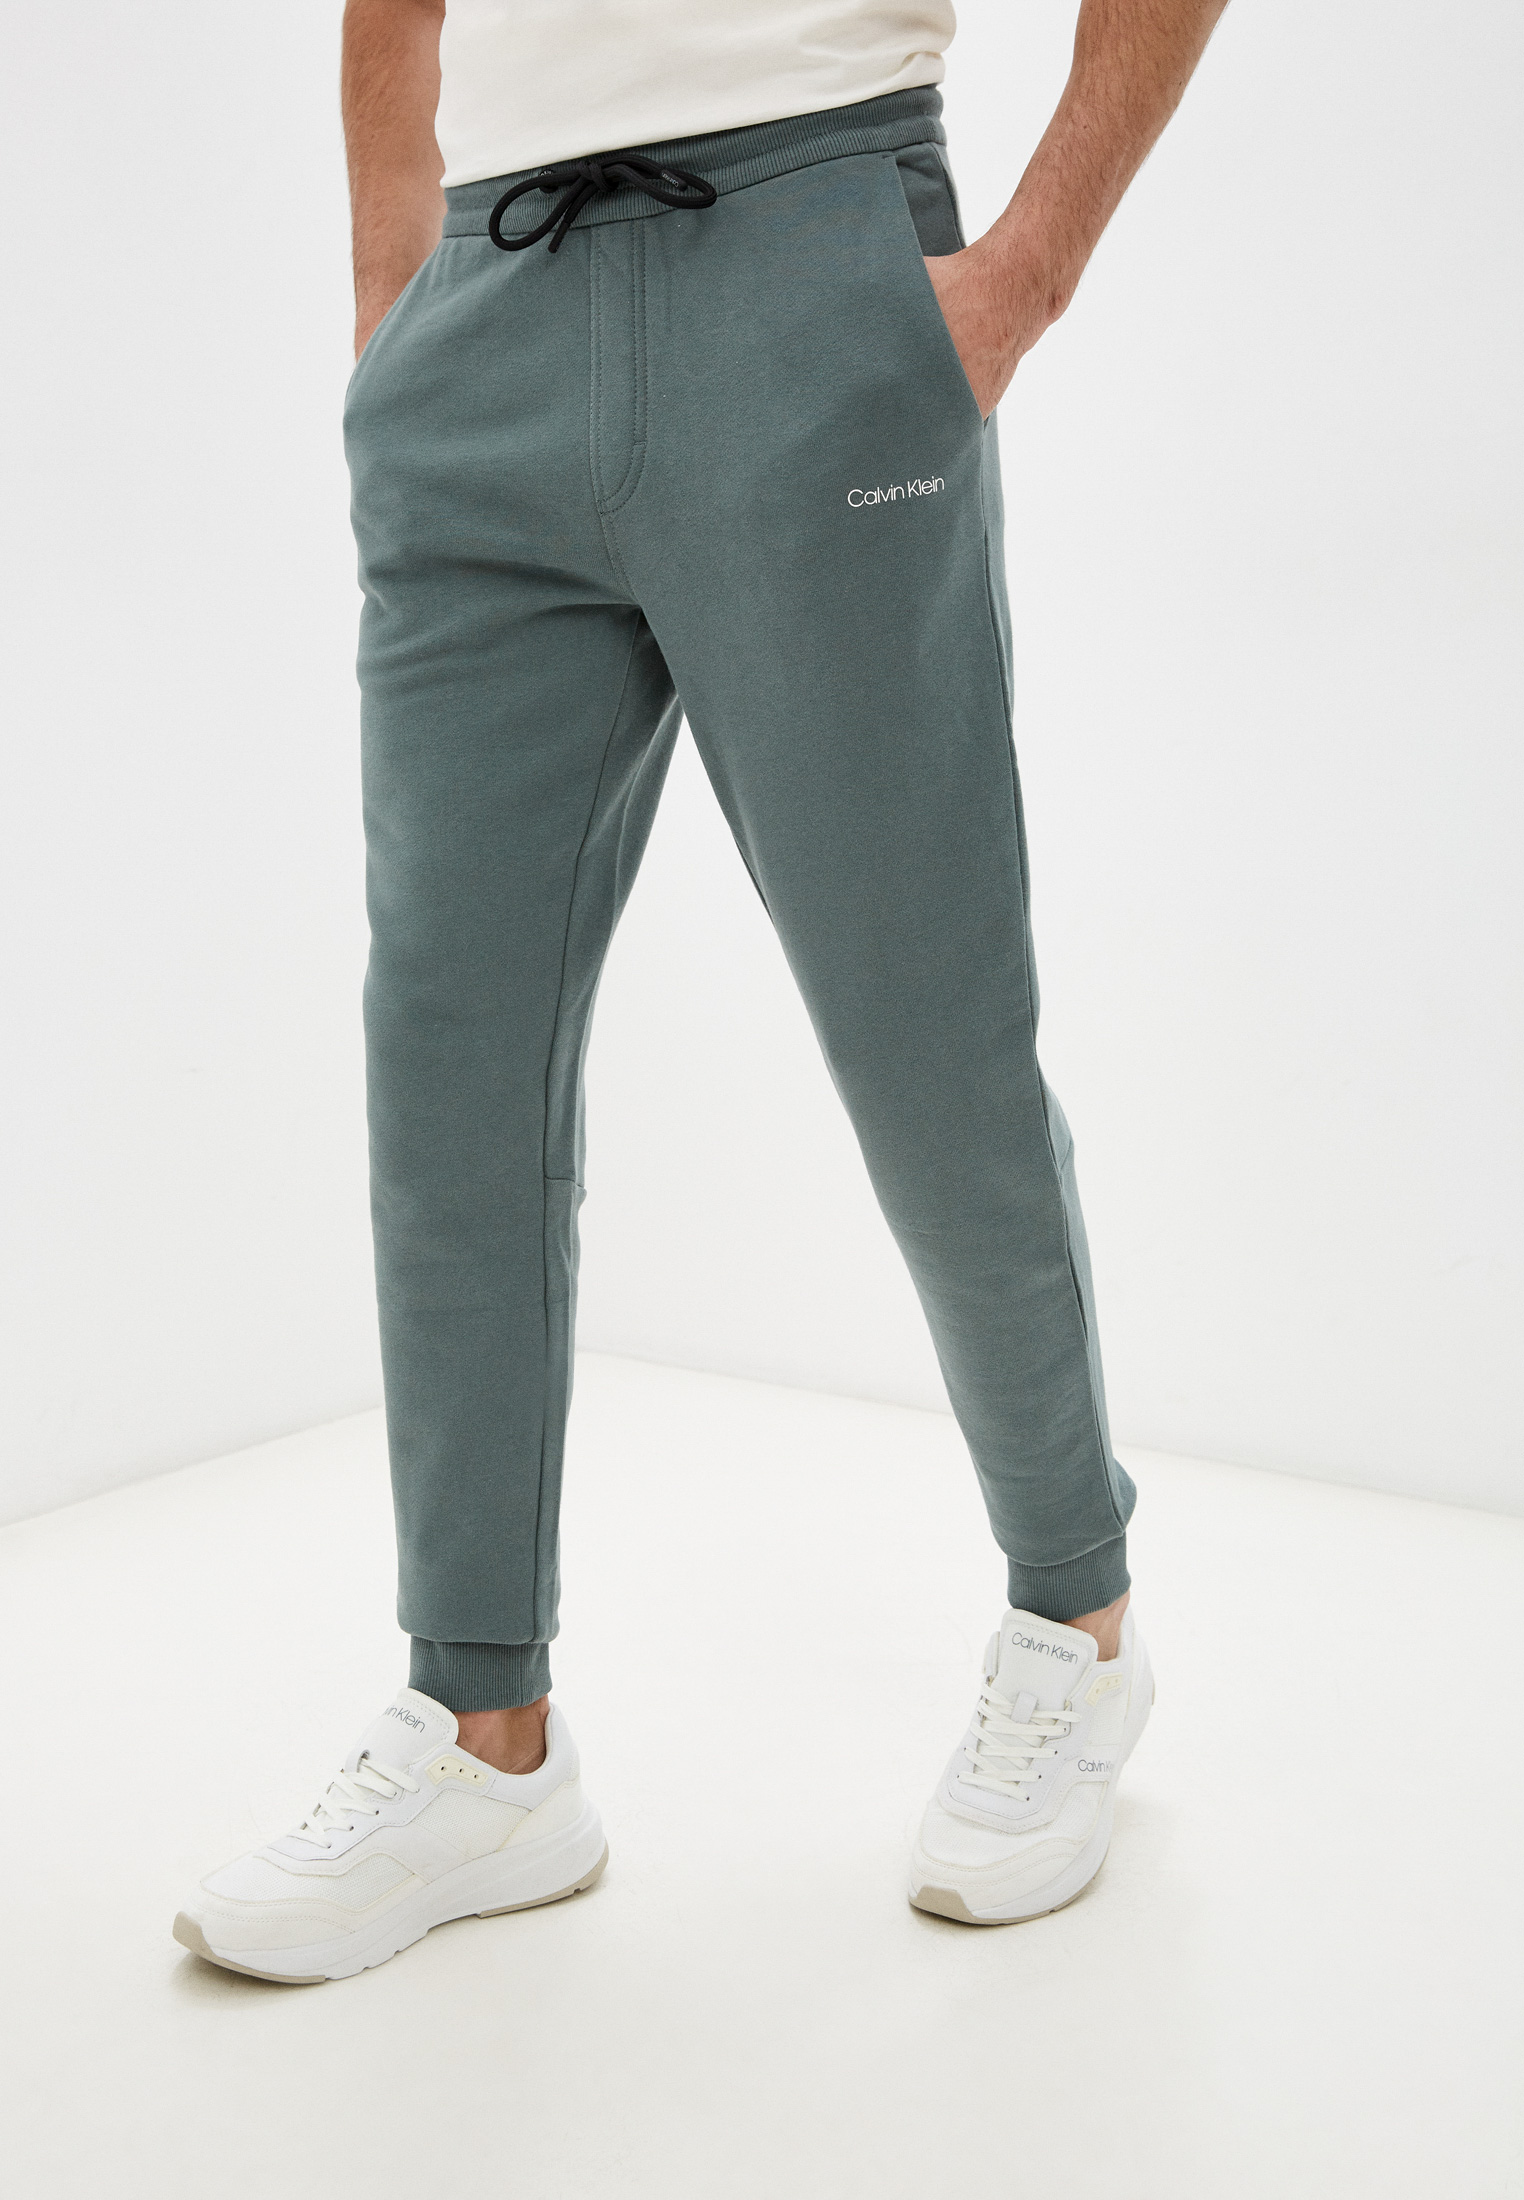 Мужские спортивные брюки Calvin Klein (Кельвин Кляйн) K10K107954 (Цвет:Зеленый) купить в интернет-магазине stylefish.ru